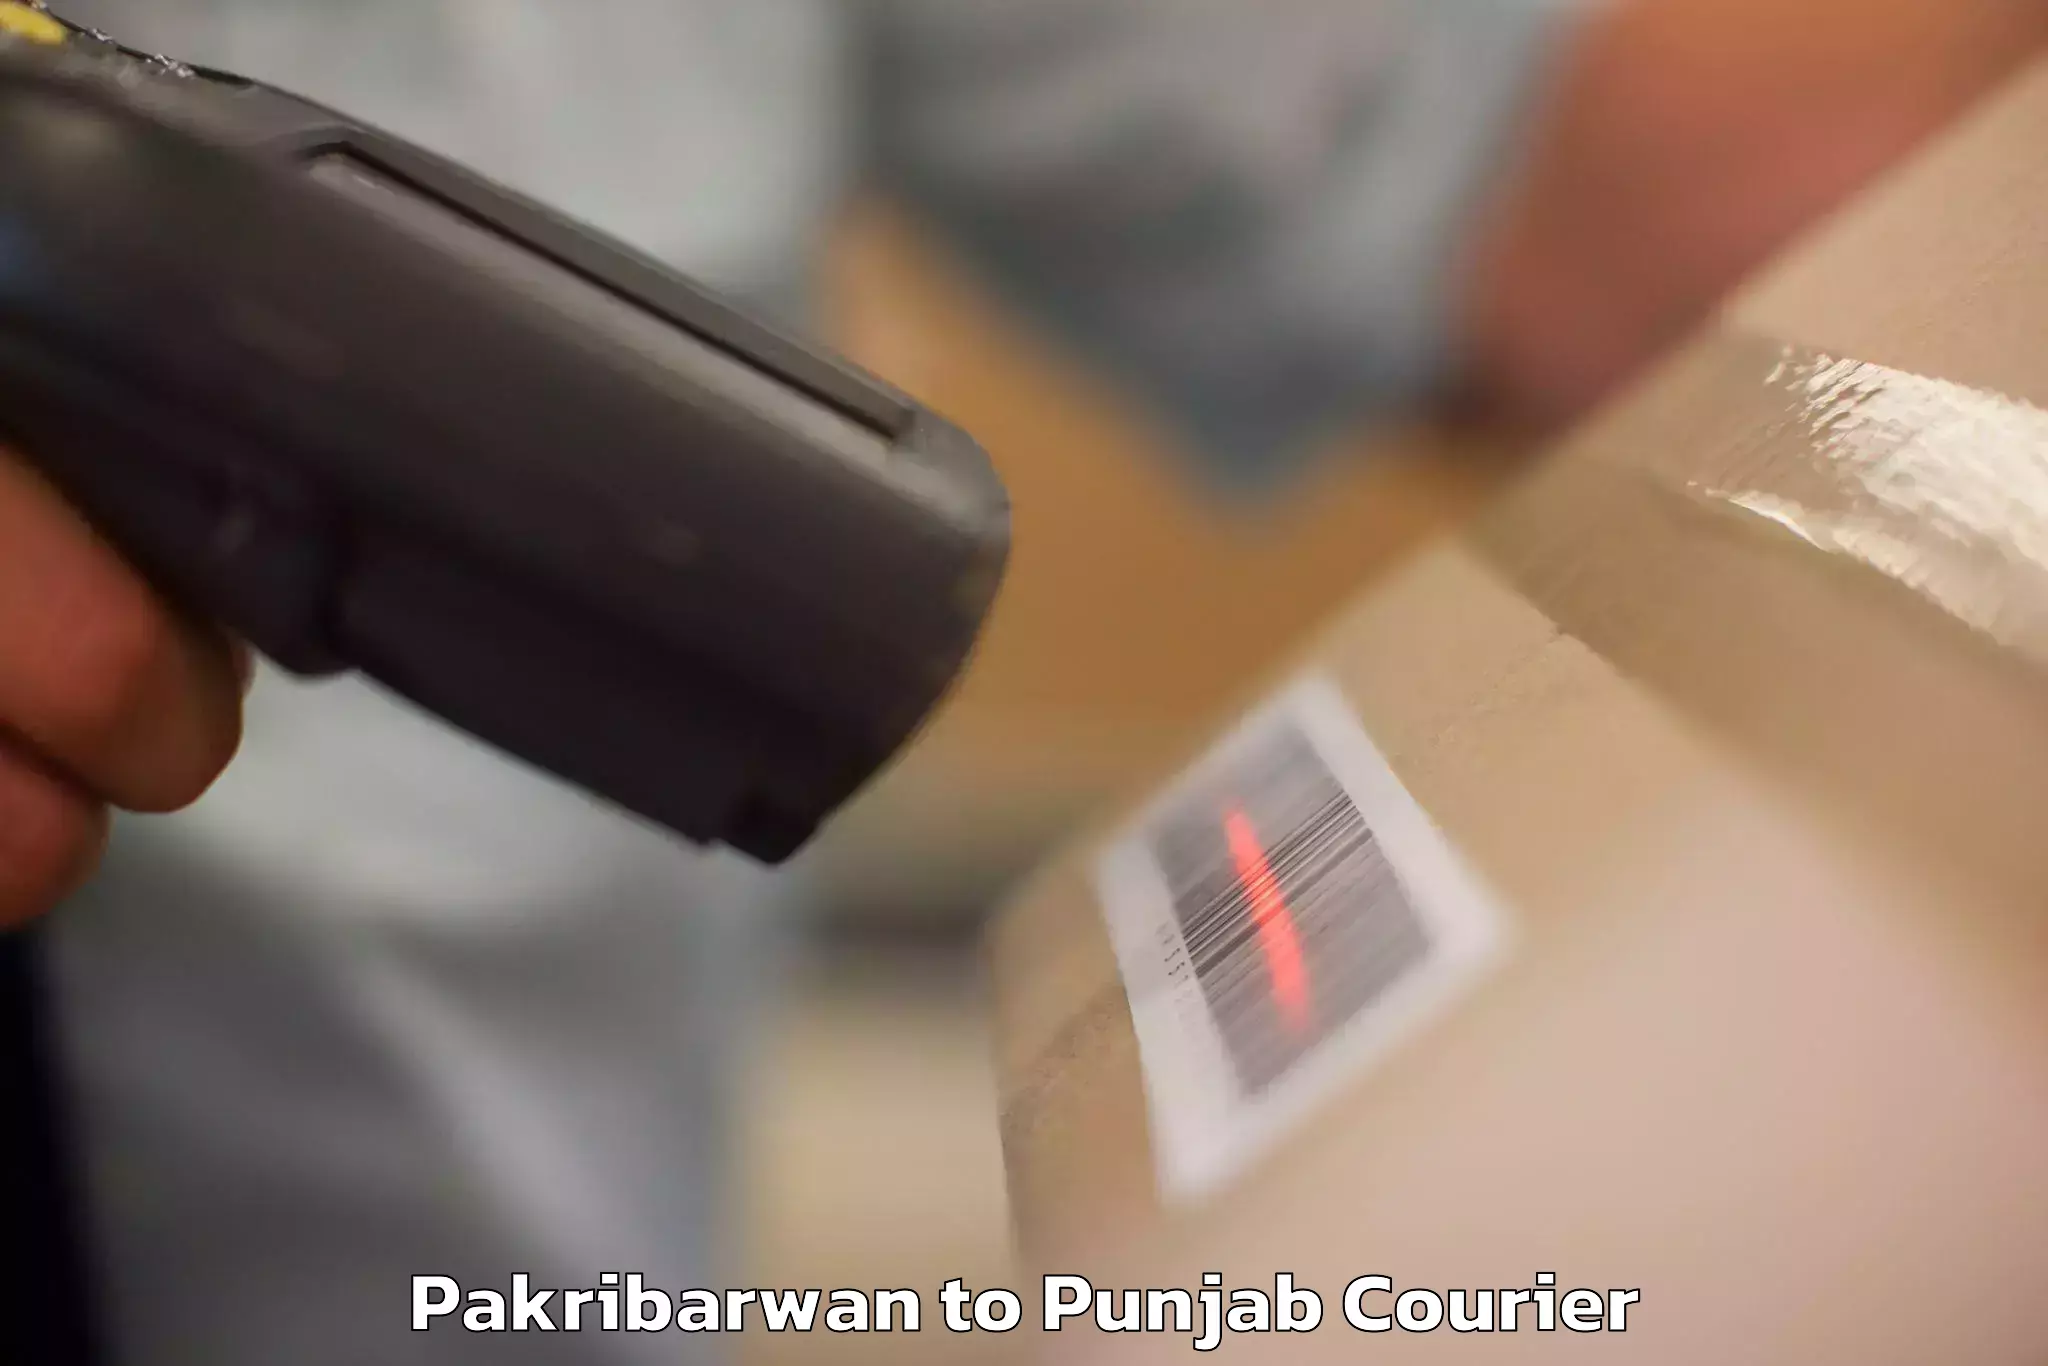 Luggage transport consultancy Pakribarwan to Punjab